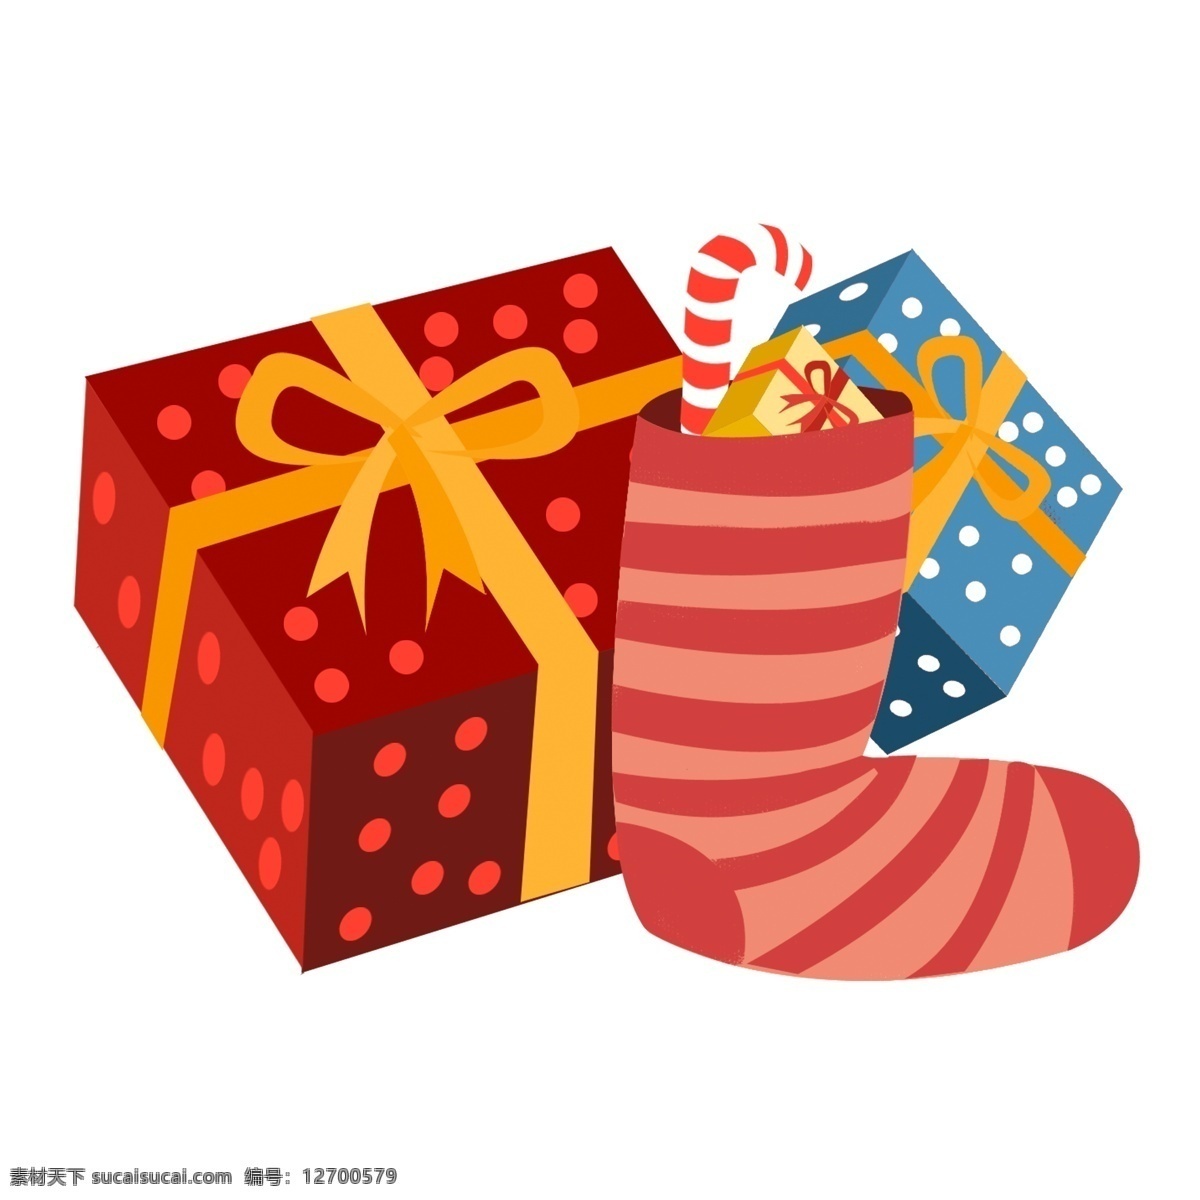 d 西方 节日 圣诞节 礼物 盒 圣诞 袜子 元素 礼物盒 圣诞袜子 精美礼物 礼盒 2.5d 西方节日 长筒袜